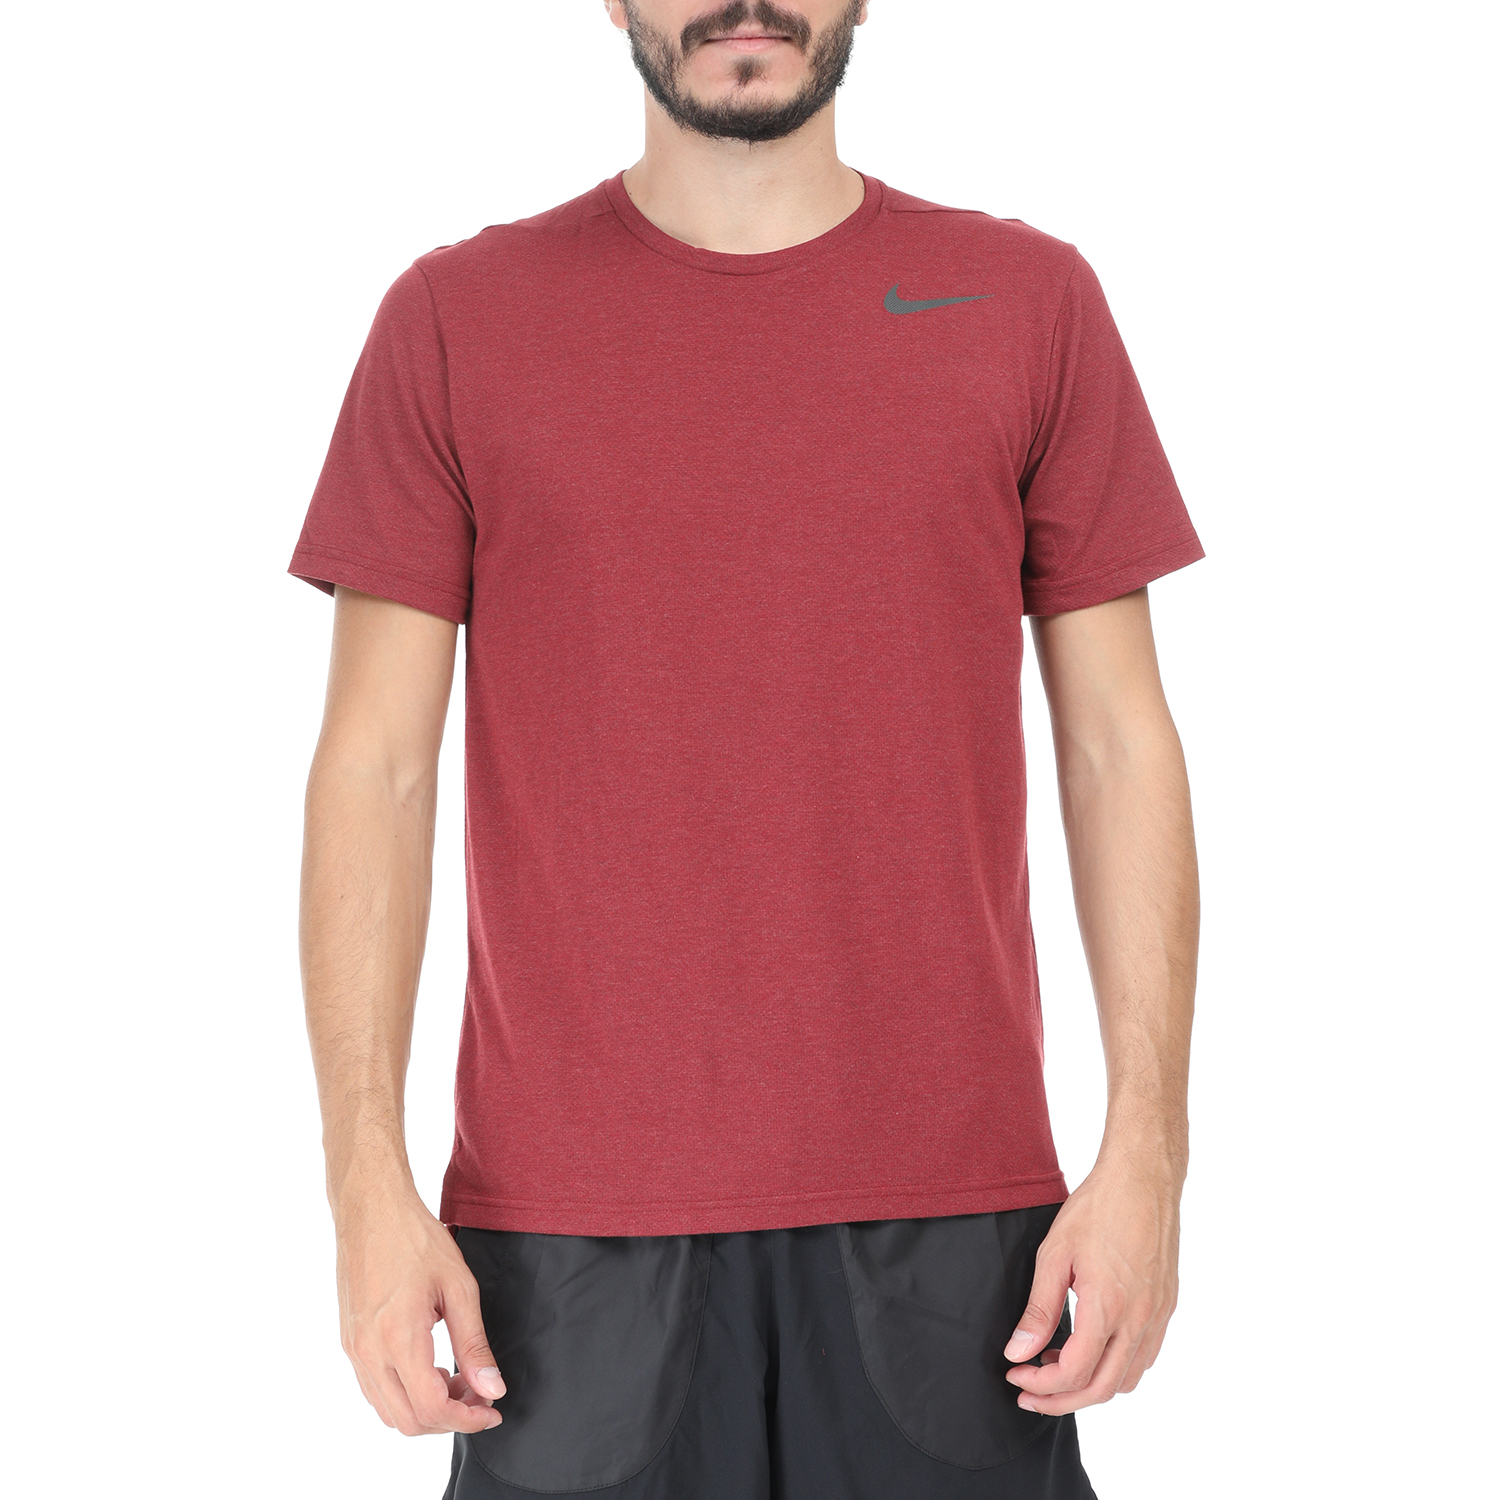 Ανδρικά/Ρούχα/Αθλητικά/T-shirt NIKE - Ανδρική αθλητική μπλούζα NIKE Breathe HPR DRY μπορντο